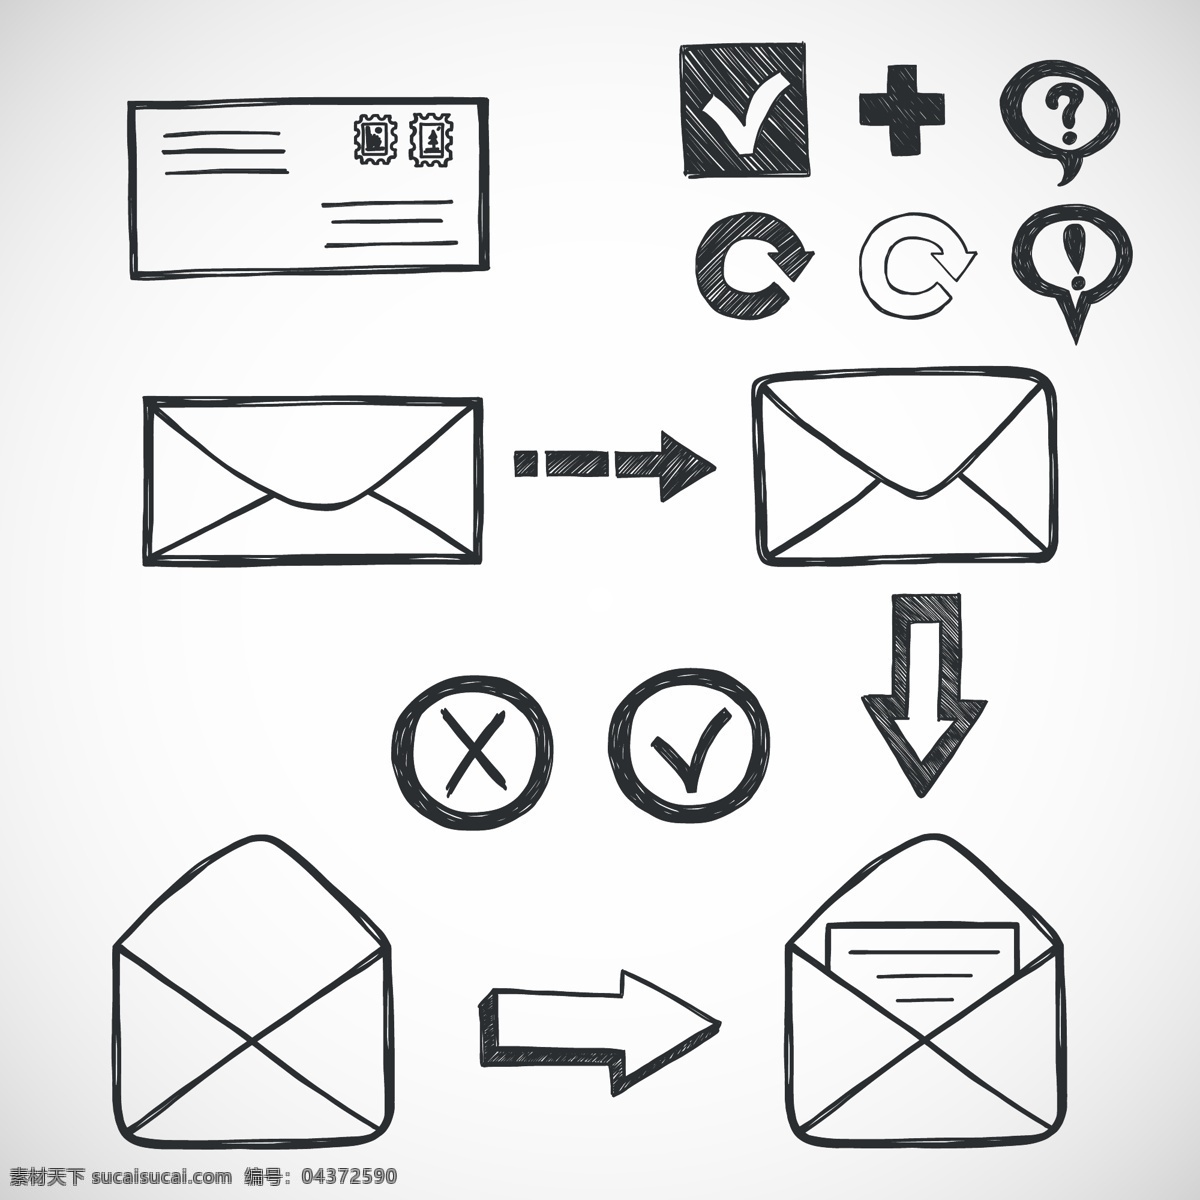 电子邮件 主题 图标 矢量 ai格式 矢量图标 email 信箱 邮箱 信封 邮票 地球 文件夹 便签纸 矢量素材